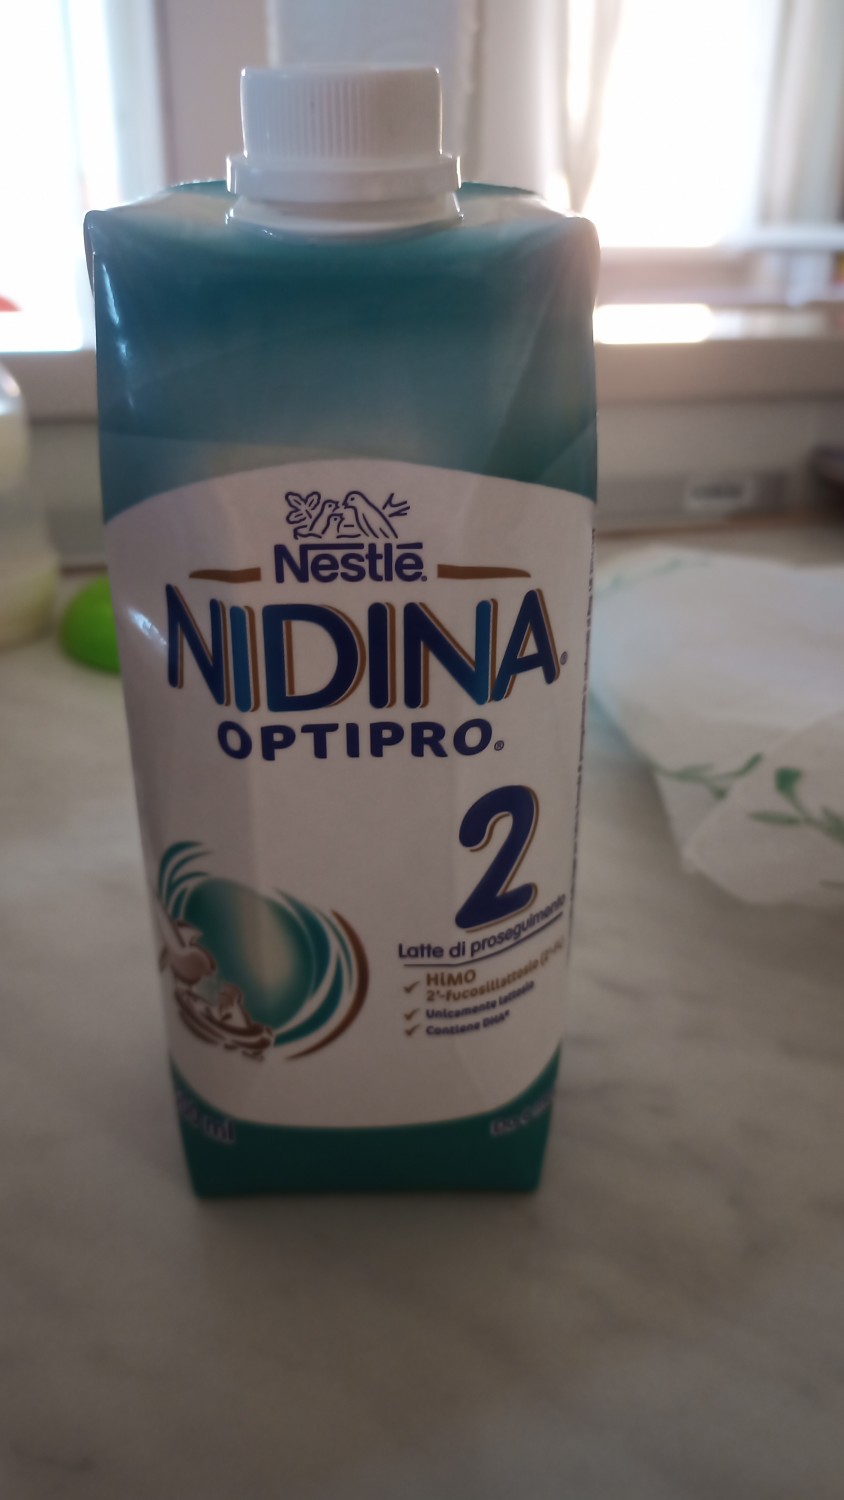 Nestlé Nidina Optipro 3 Latte di crescita in formato liquido